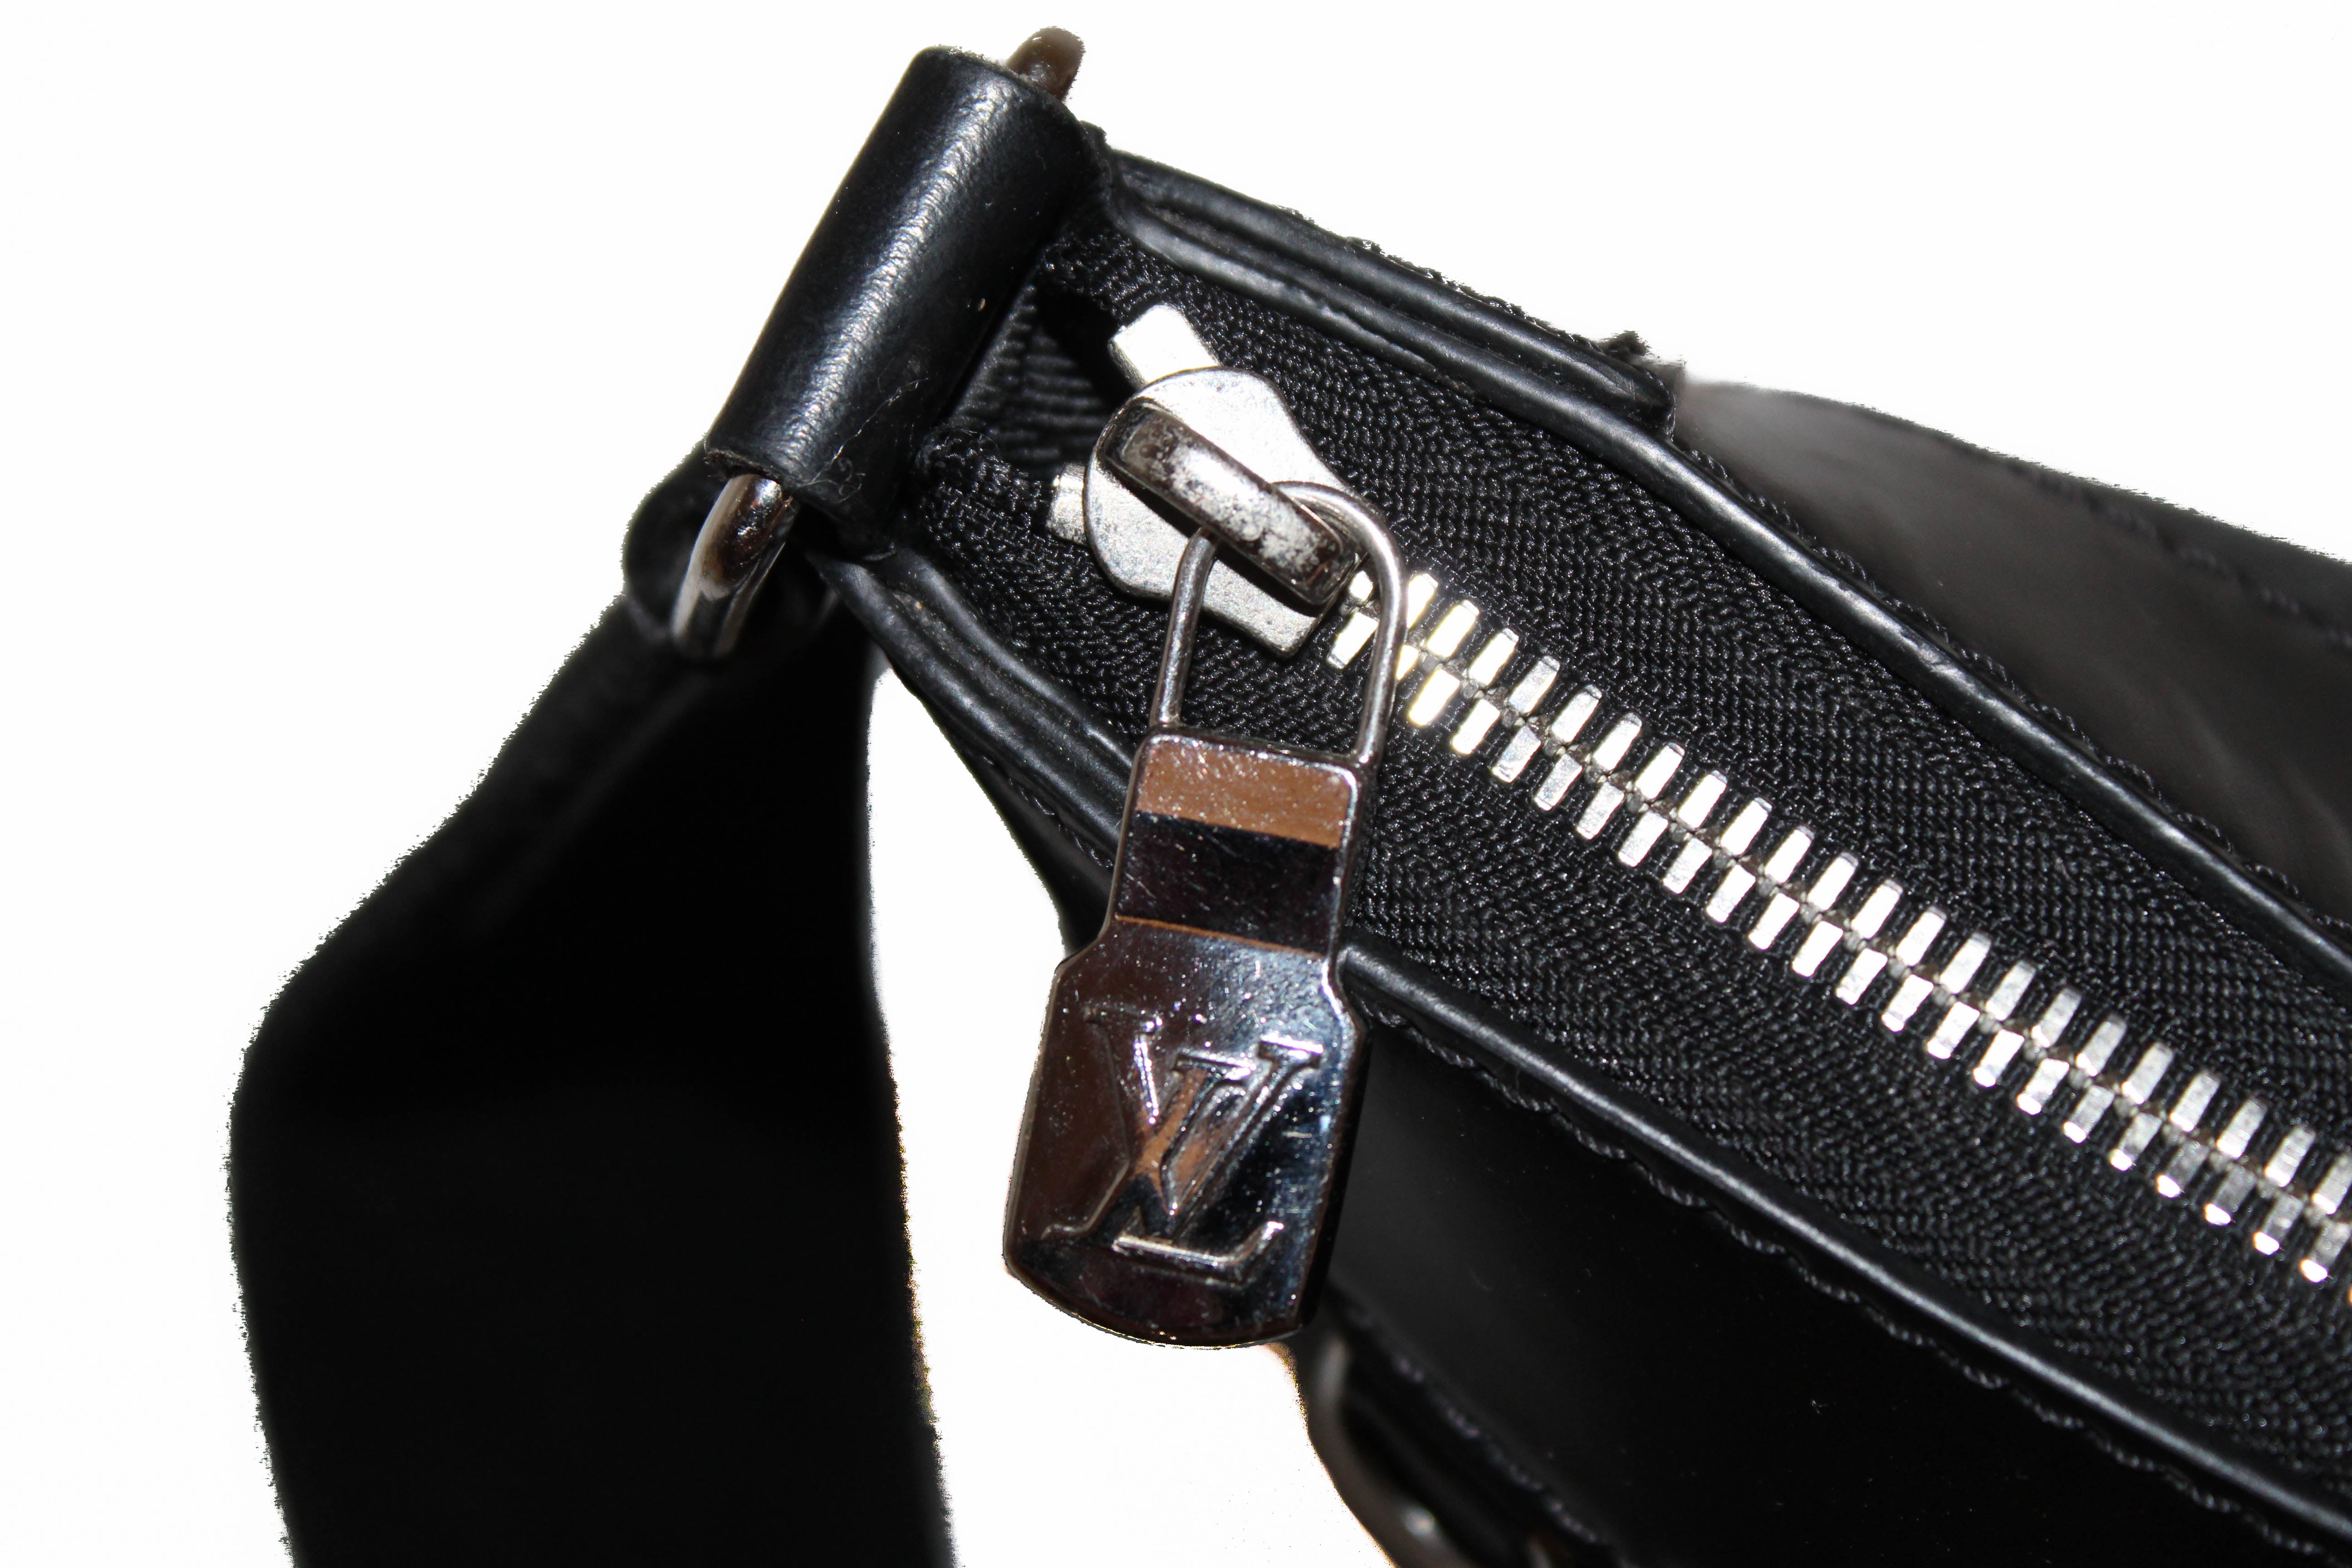 รีวิวกระเป๋า Mick messenger bag ของ Louis Vuitton 